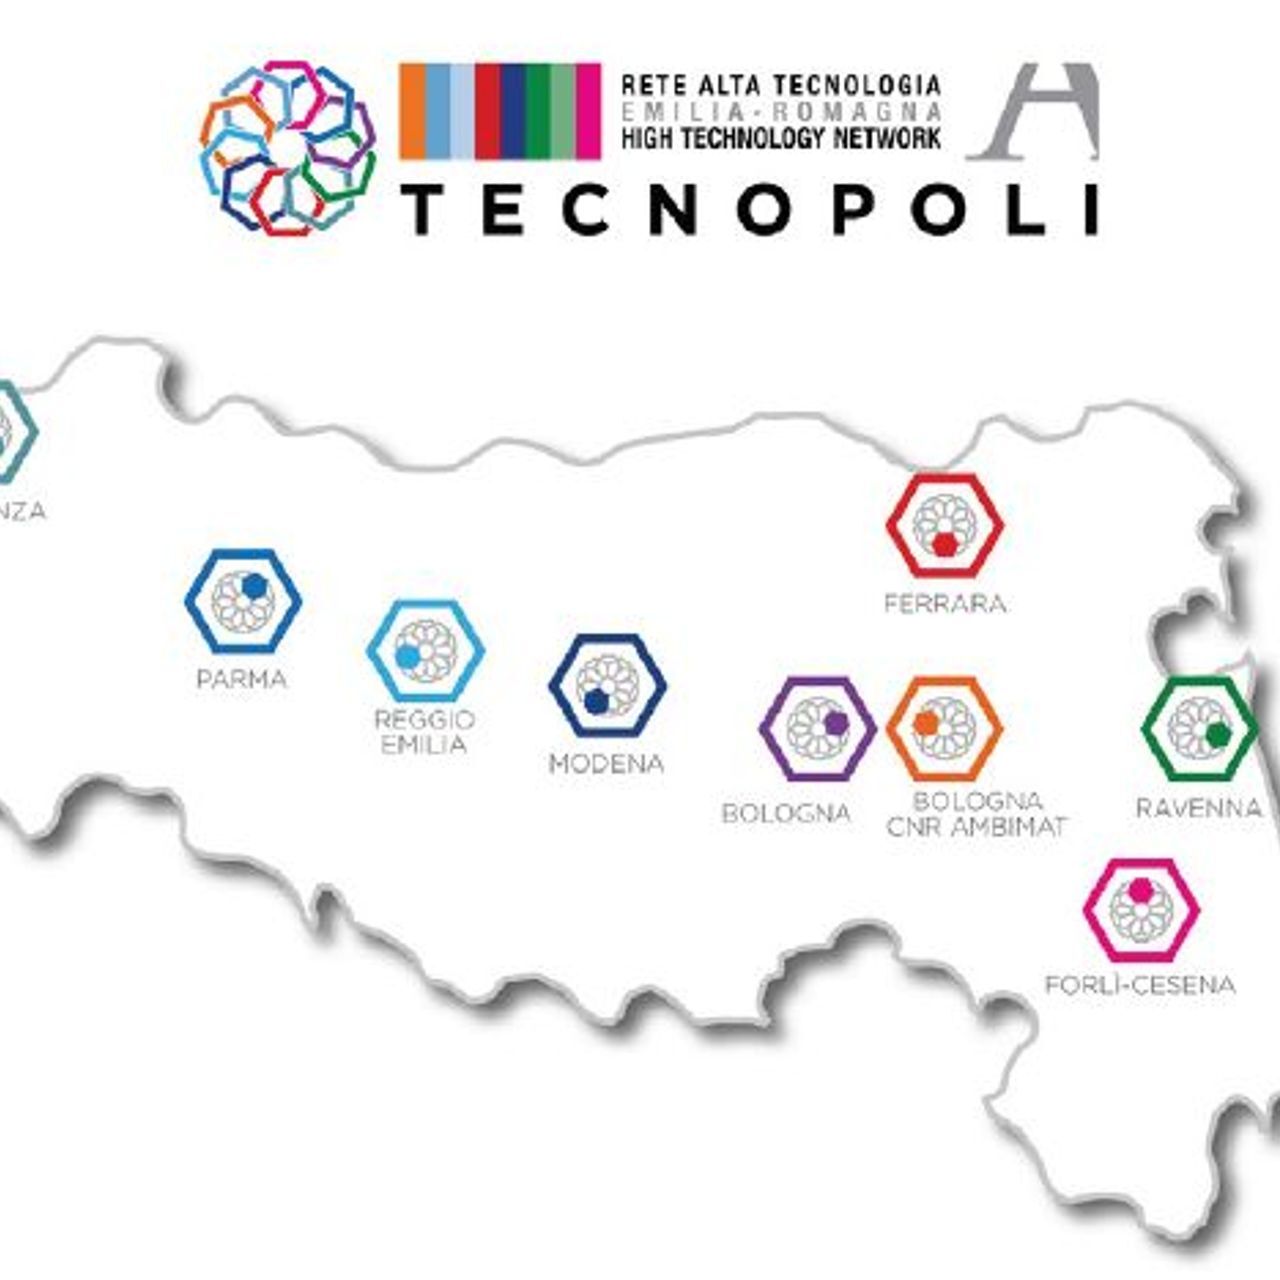 Das Hightech-Netzwerk der Region Emilia-Romagna